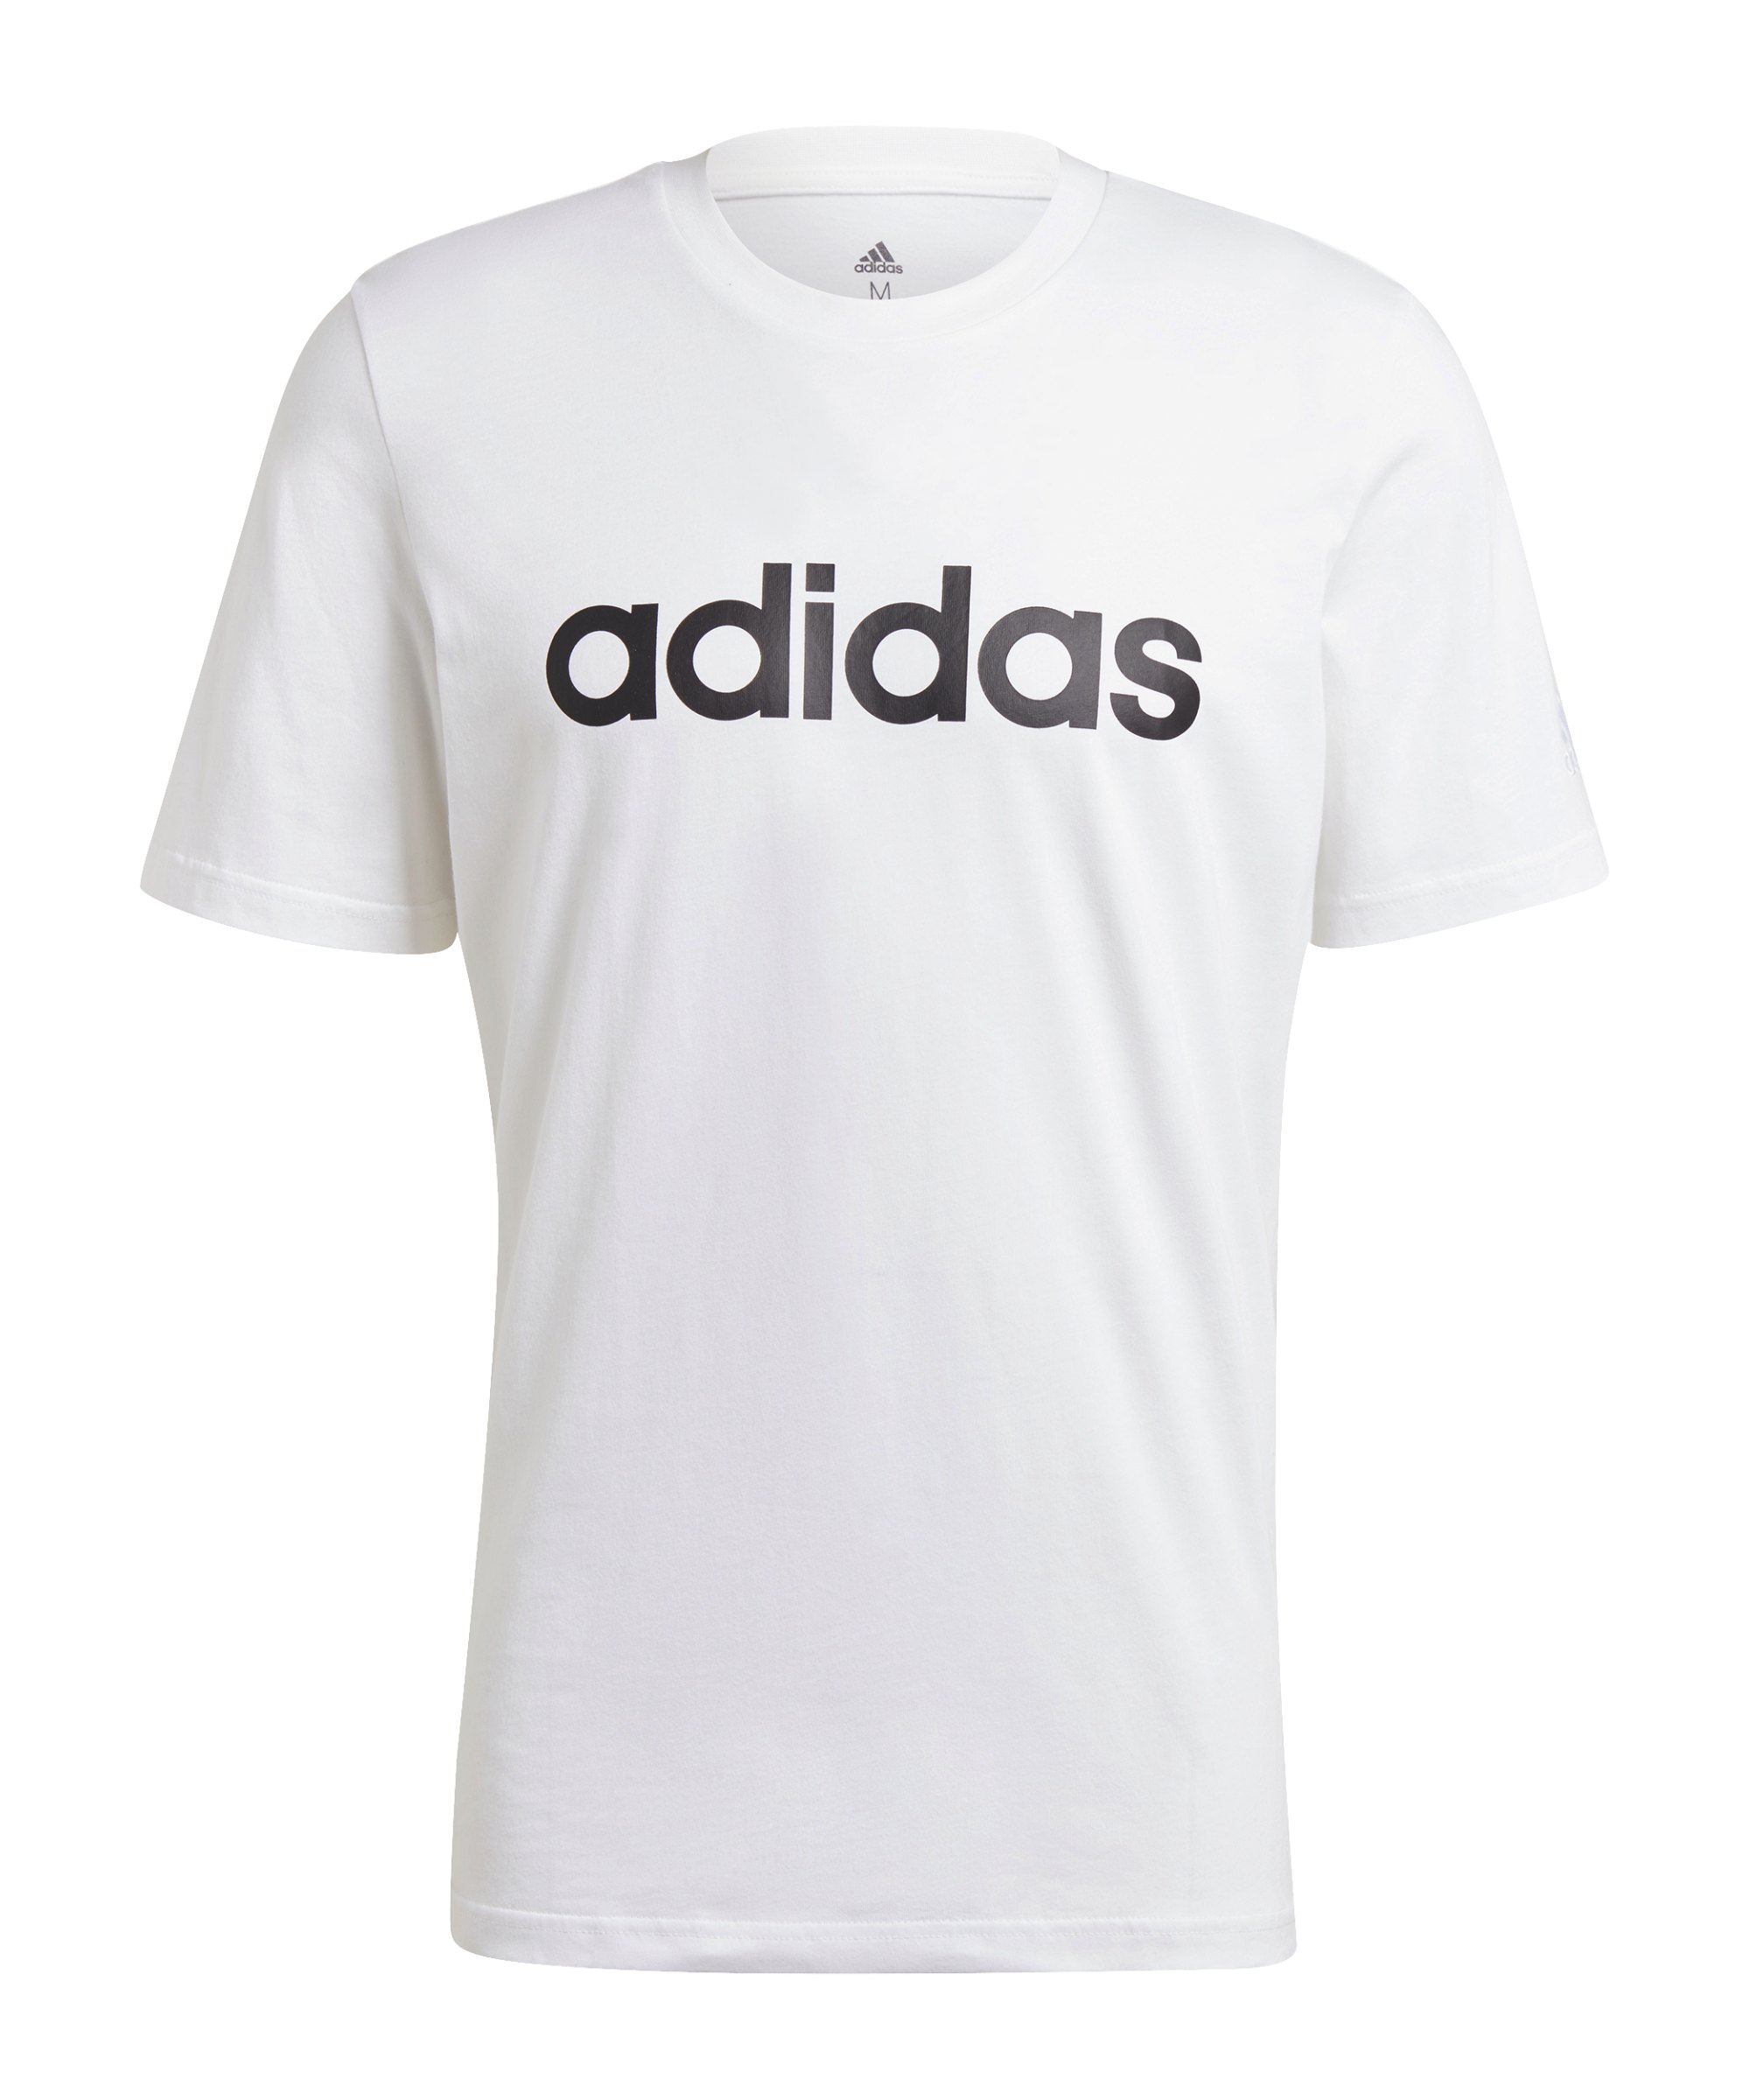 adidas Essentials T-Shirt Weiss - weiss